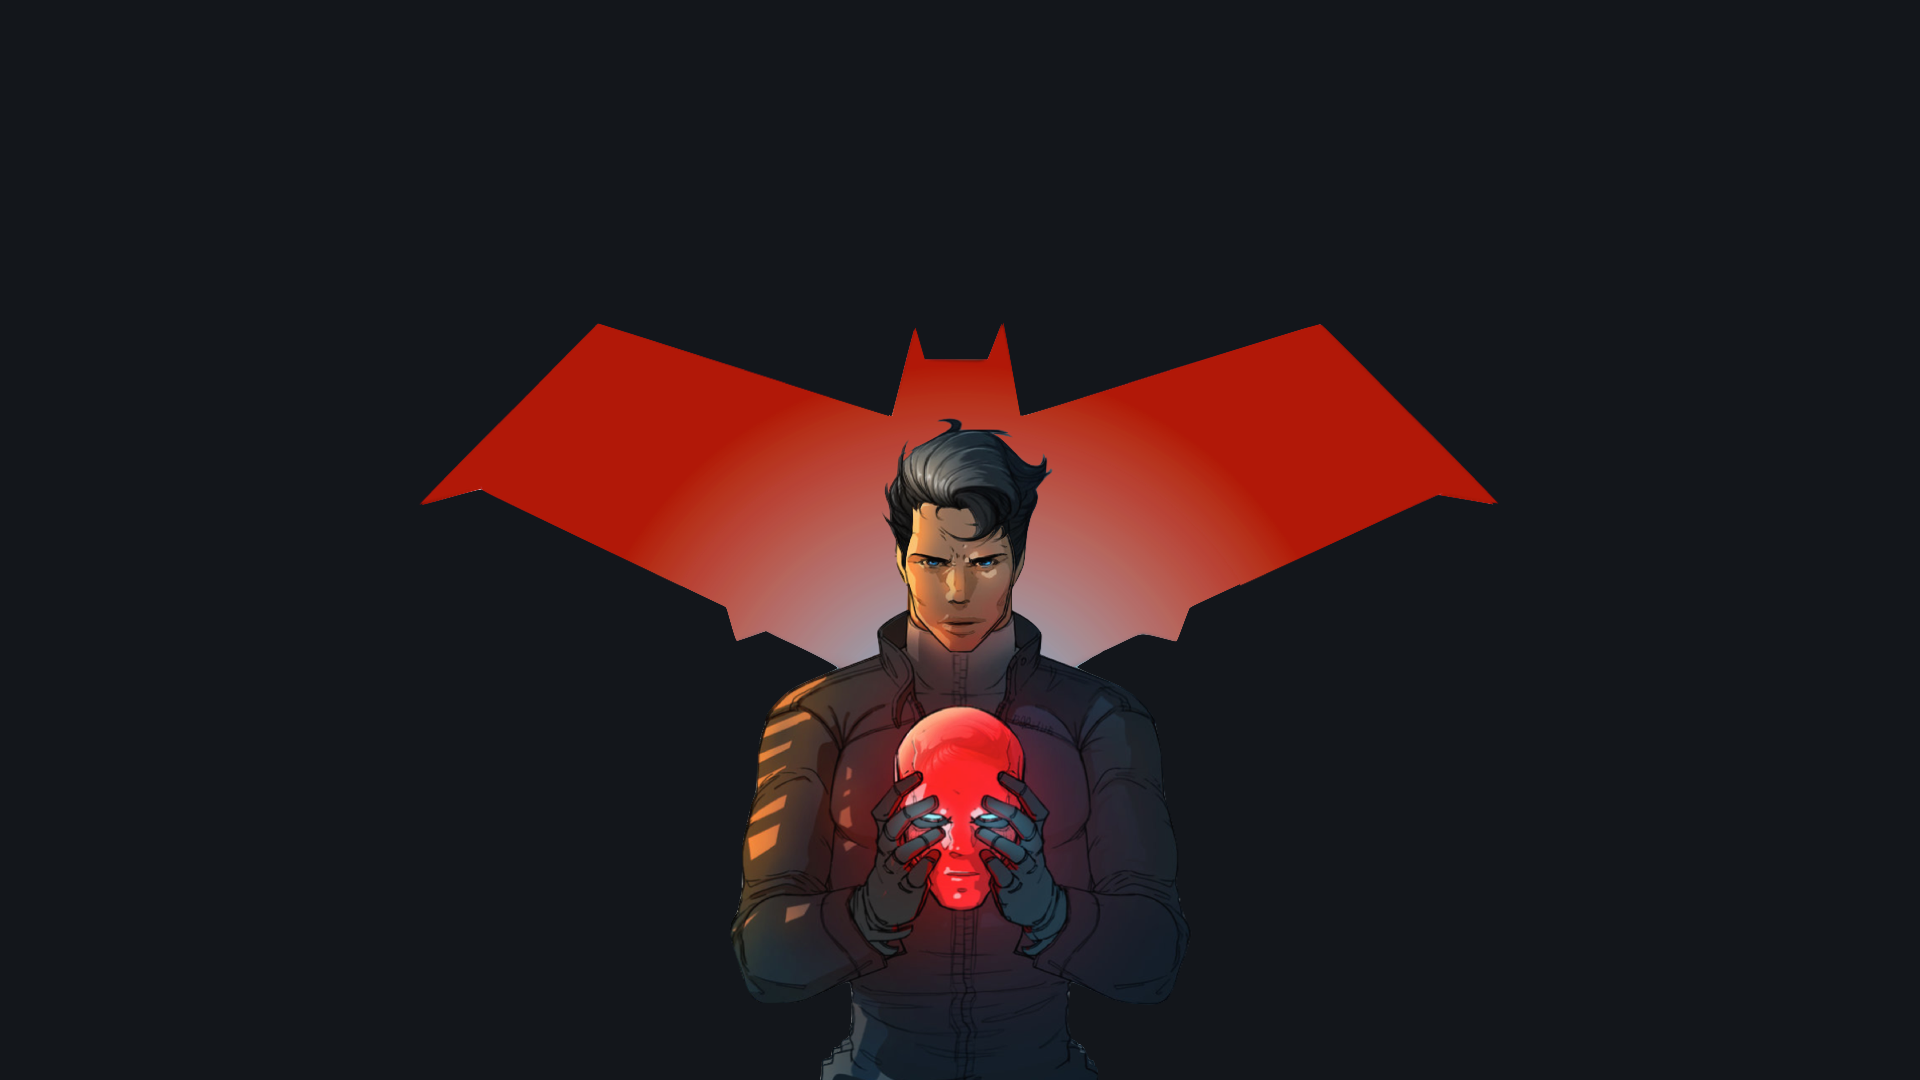 capucha roja fondo de pantalla hd,rojo,ilustración,personaje de ficción,superhéroe,diseño gráfico